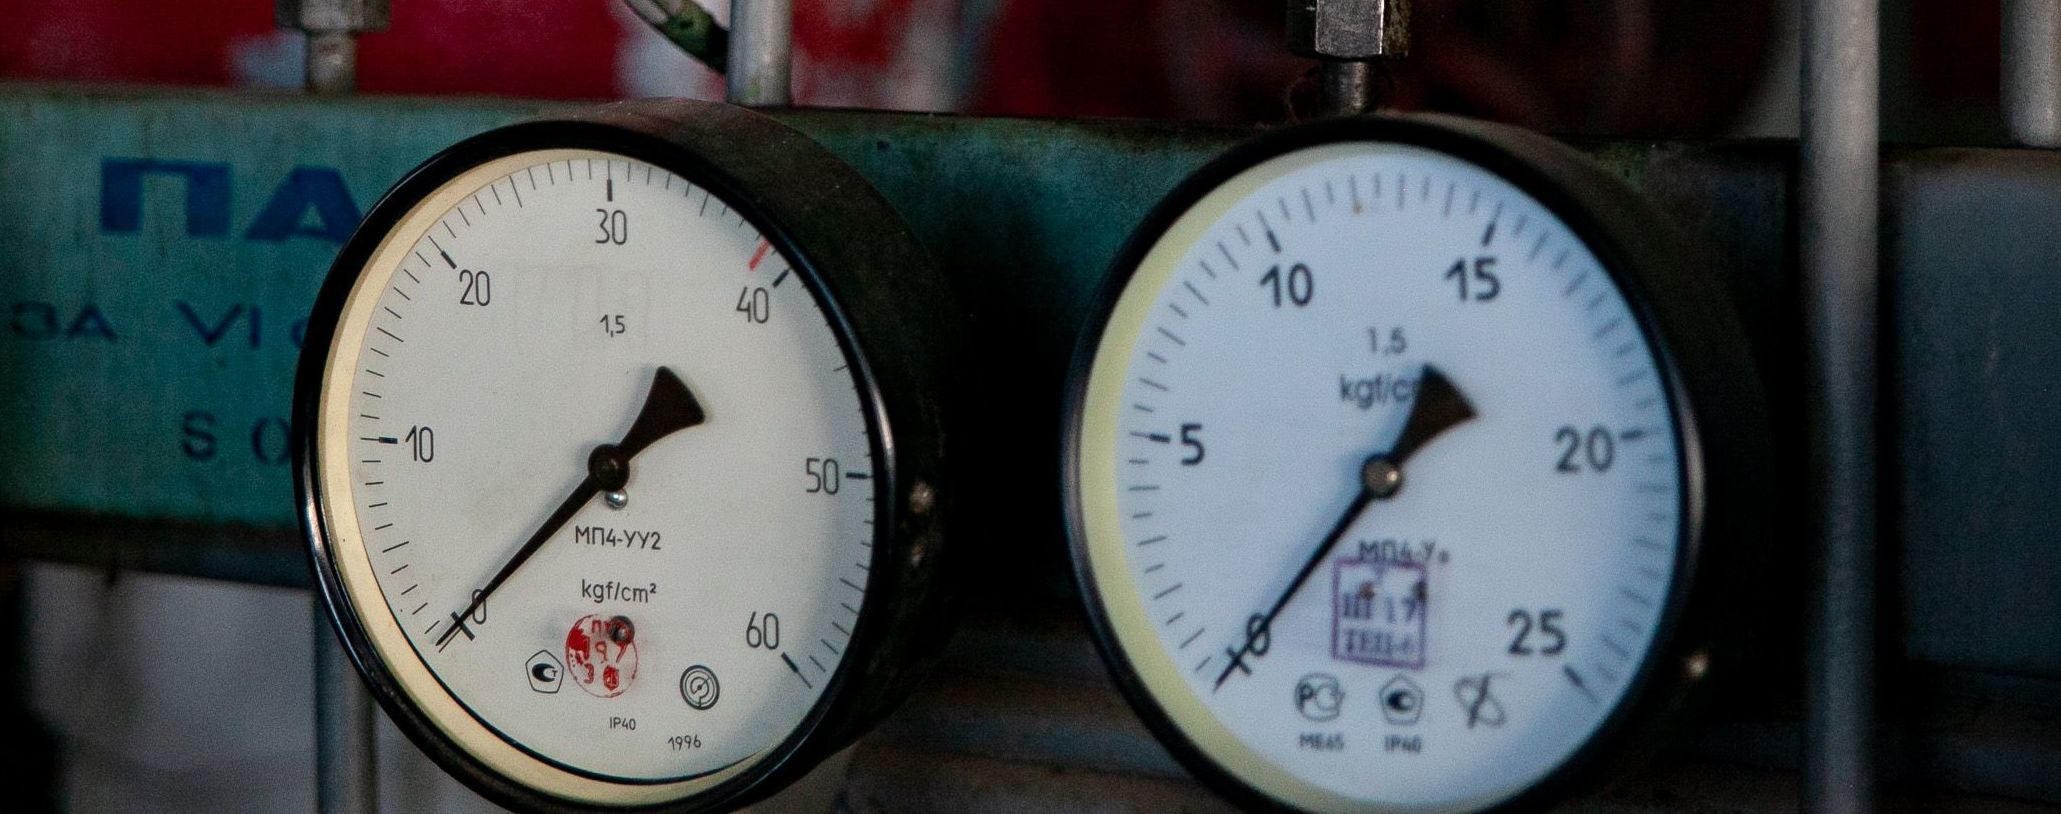 "Нафтогаз" запропонував підключати опалення в Києві вибірково